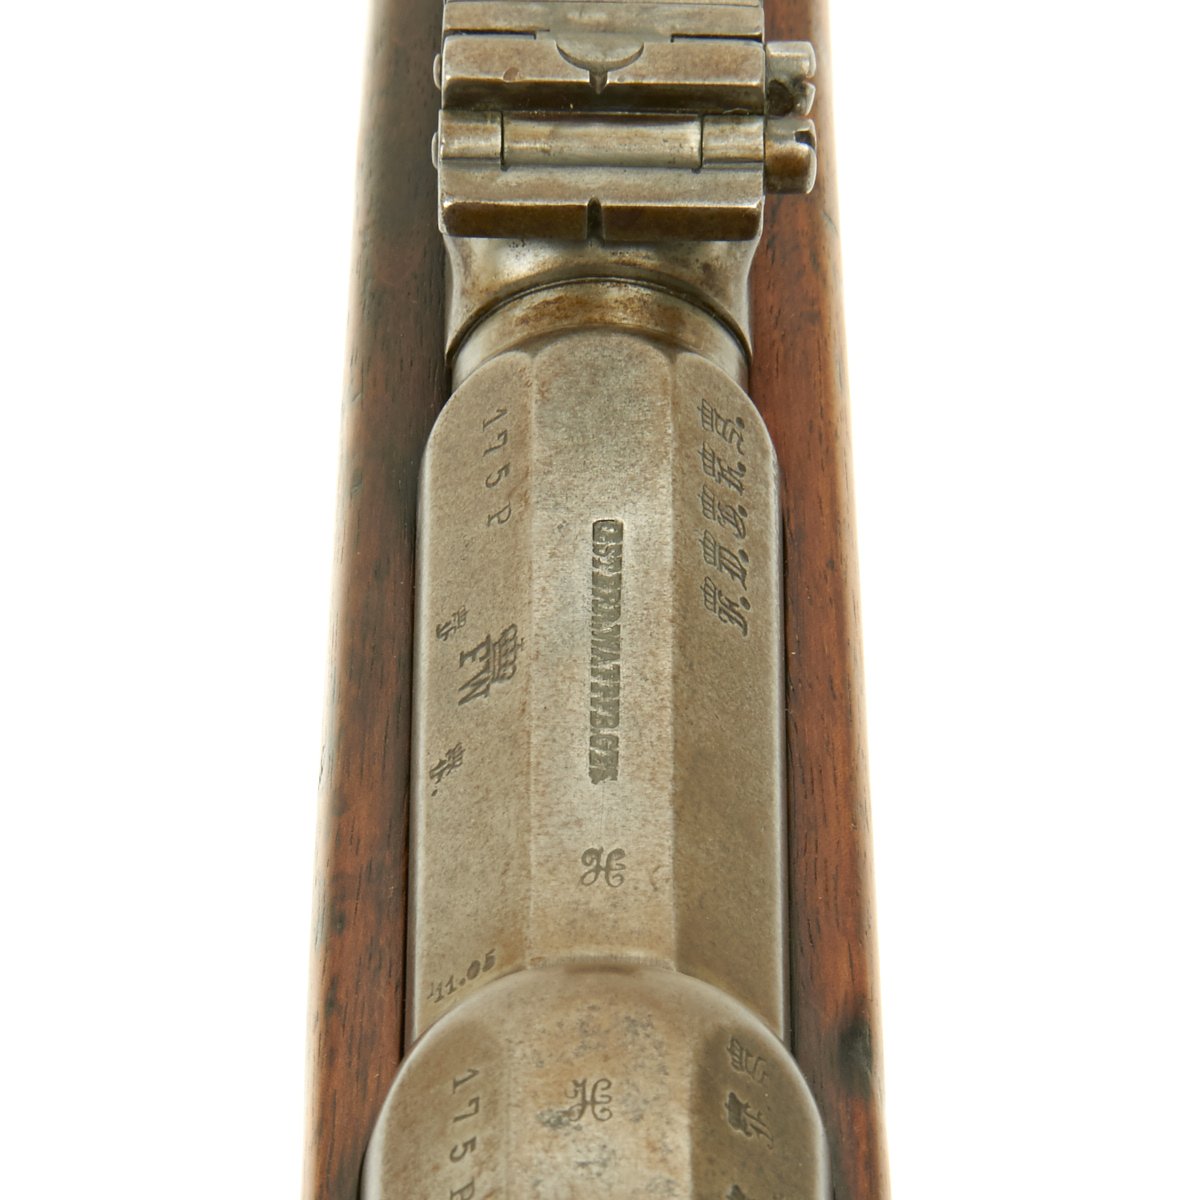 german mauser rifle serial numbers